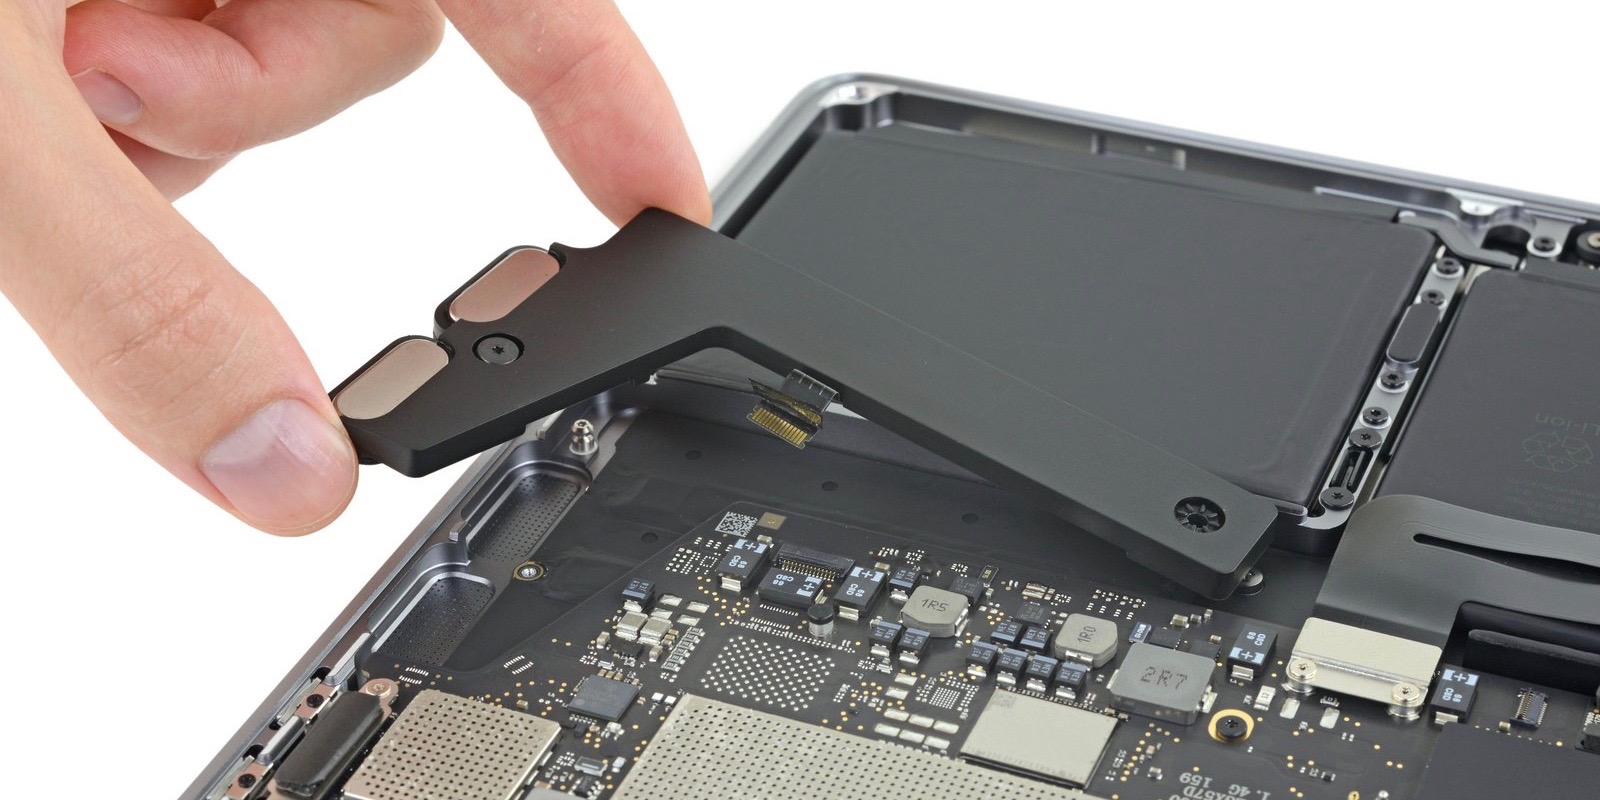 2019 13-inch MacBook Pro teardown reveals soldered-down SSD